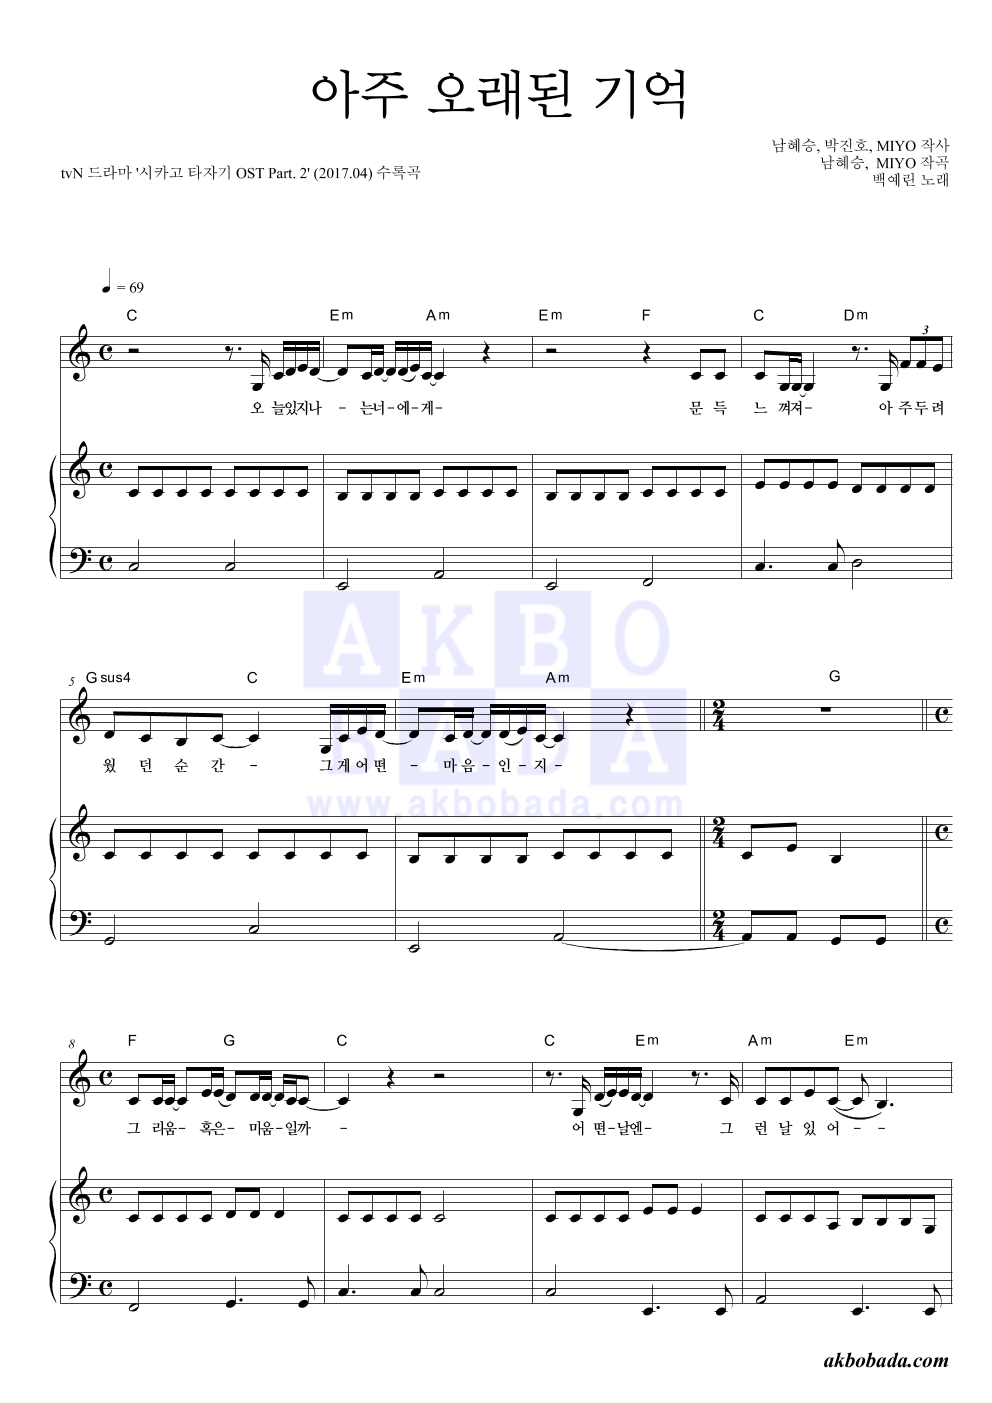 백예린 - 아주 오래된 기억 피아노 3단 악보 